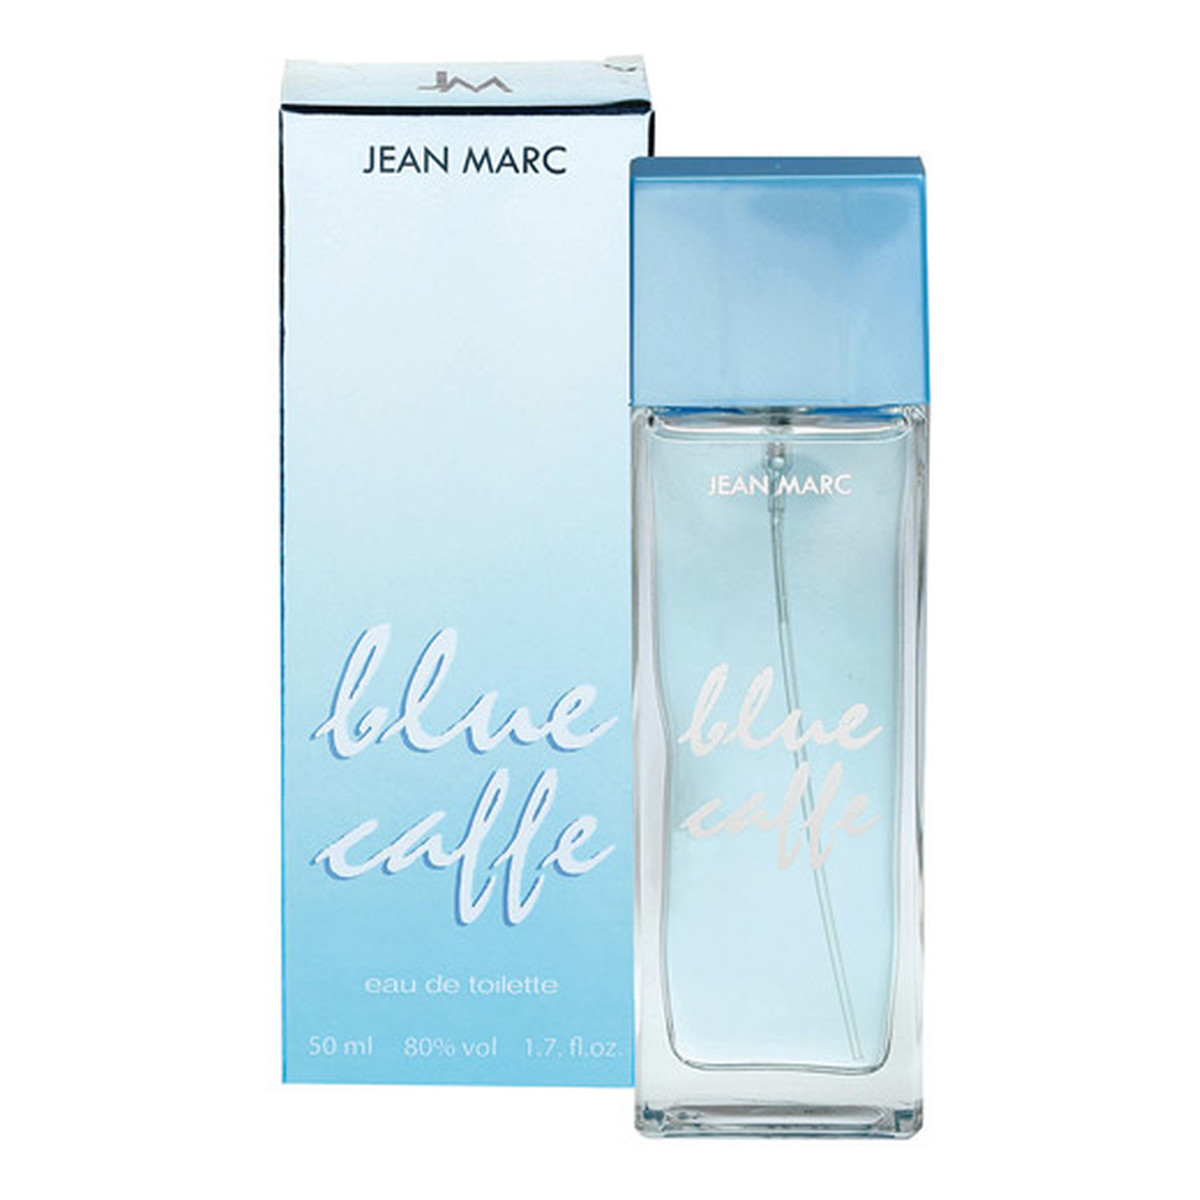 Jean Marc Blue Caffe Woda toaletowa spray 50ml